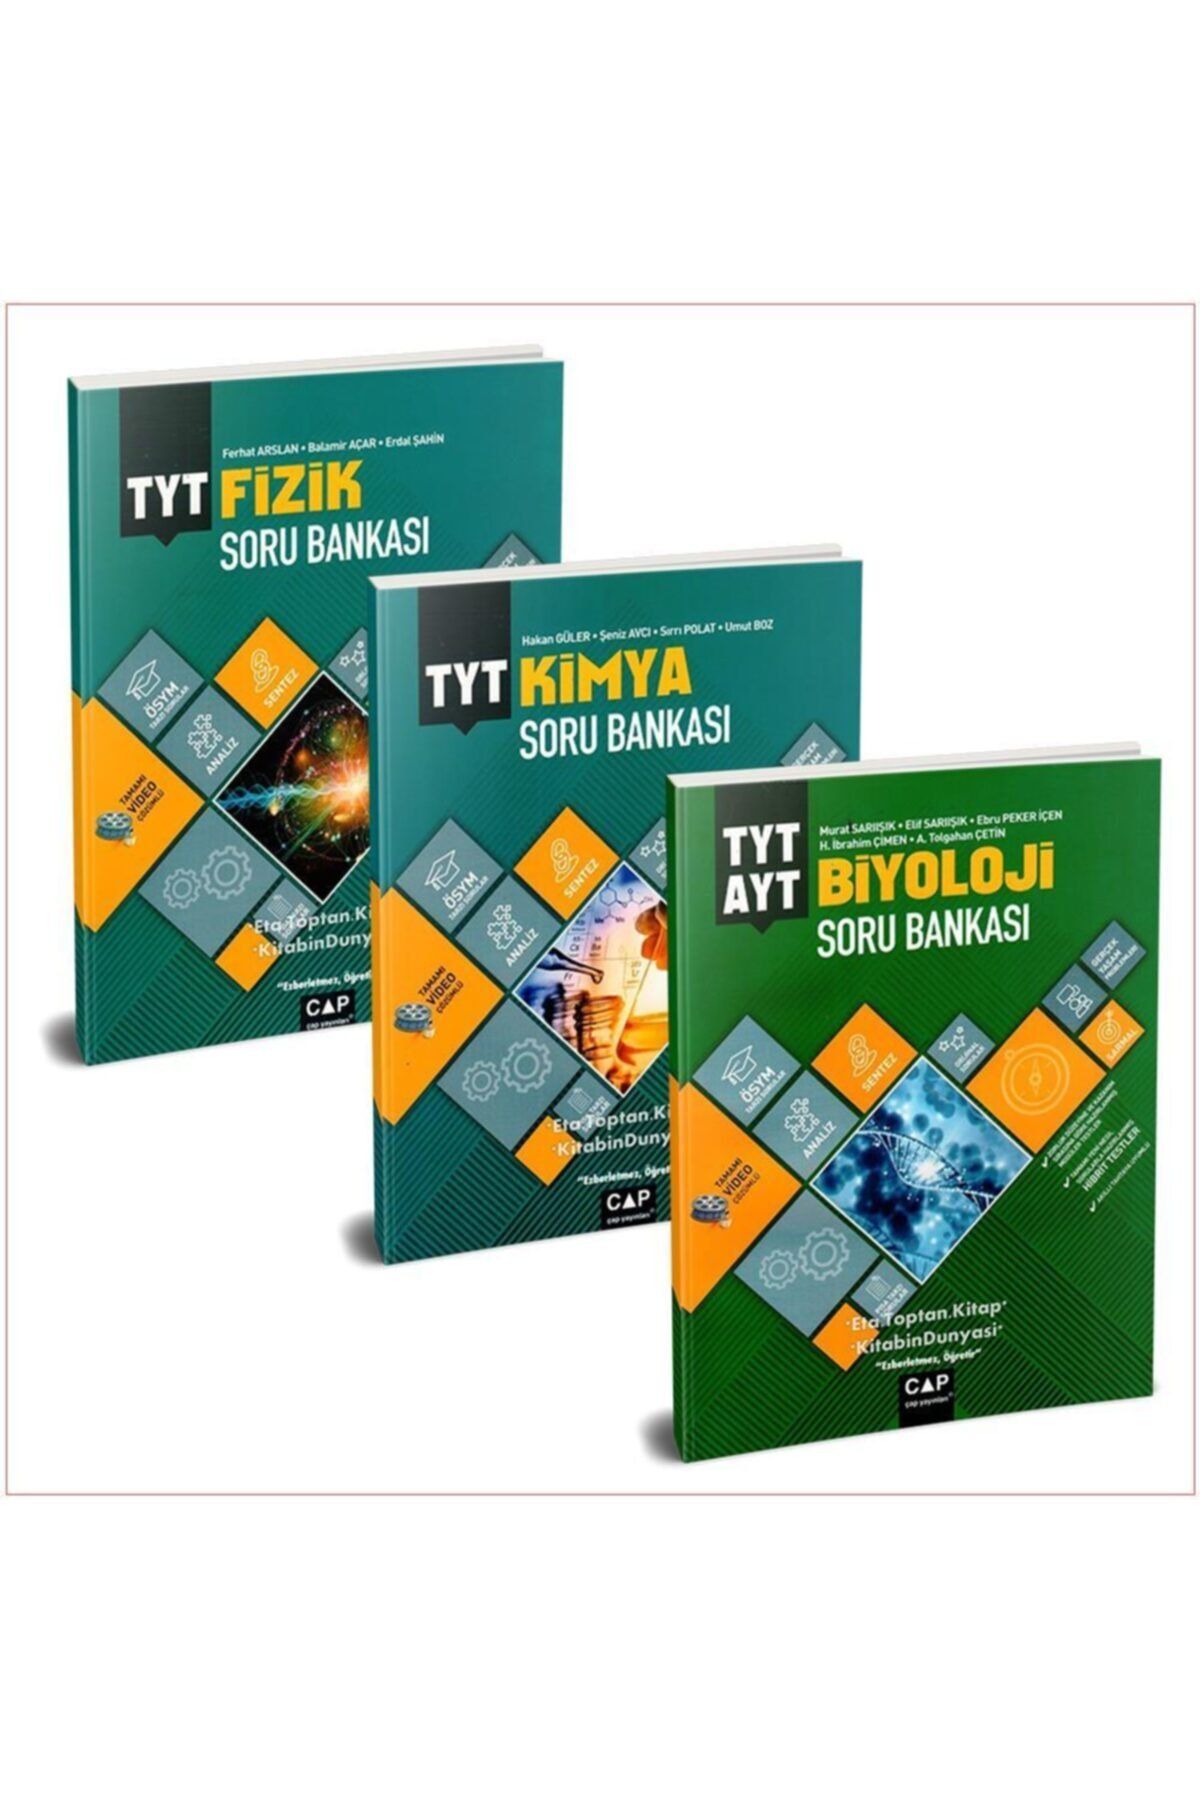 Çap Yayınları Tyt Fizik Kimya Biyoloji Soru Bankası Seti Yeni 2021